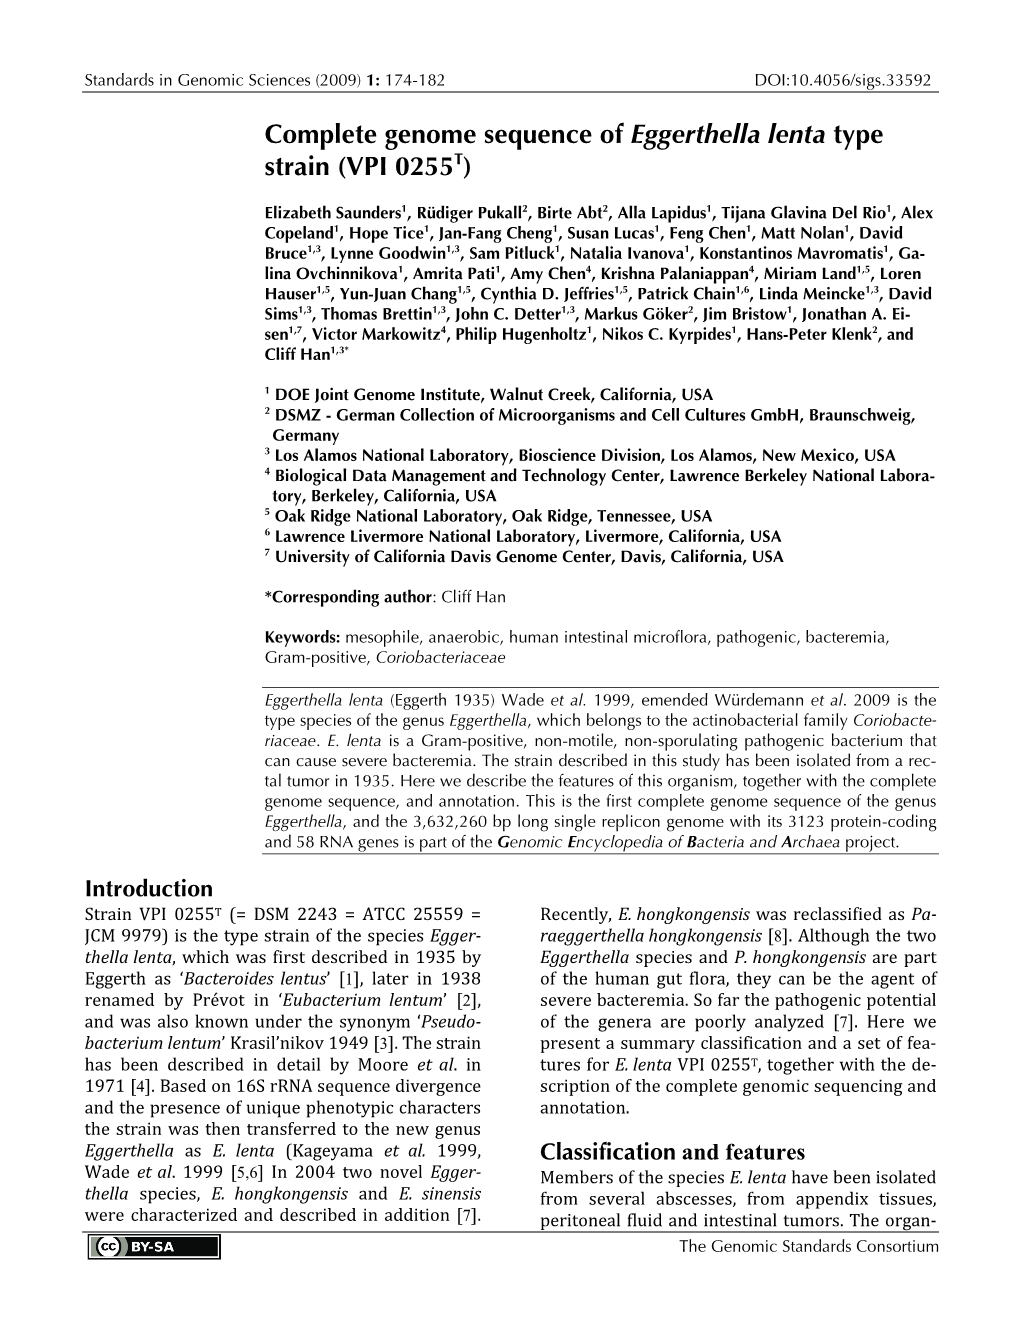 Eggerthella Lenta Type Strain IPP VPI 0255 Chemotaxonomy MMK-6 (36.3%) [8,29,31]